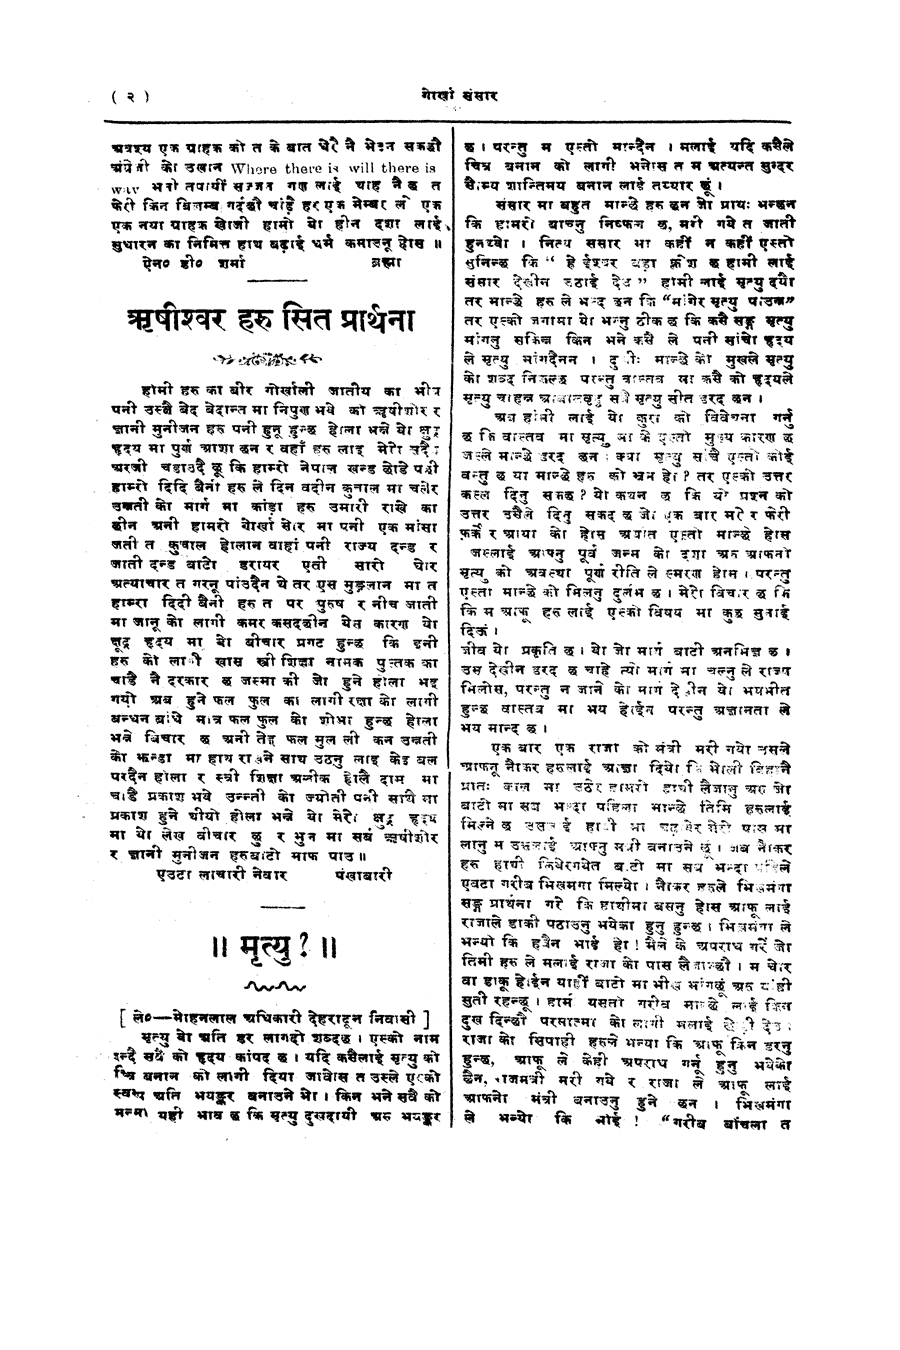 Gorkha Sansar, 11 May 1928, page 2